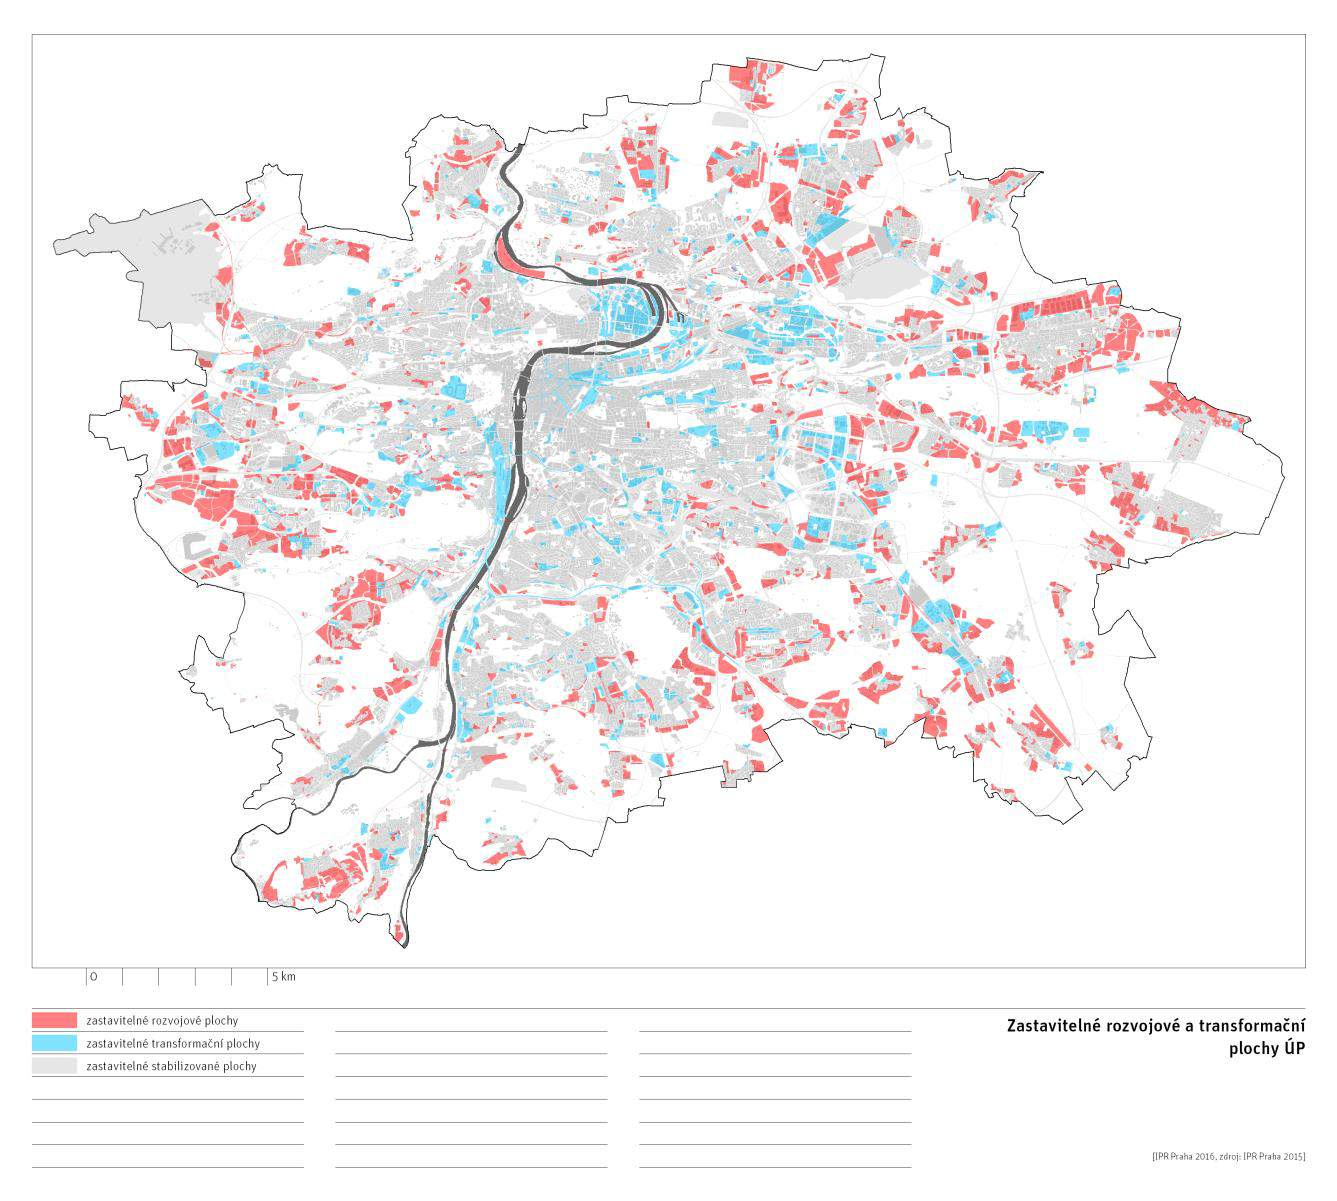 Dolní Počernice Běchovice. Podstatné je, že by měl rozvoj města podporovat koncept krátkých vzdáleností tak, aby maximalizoval efektivitu dopravy.